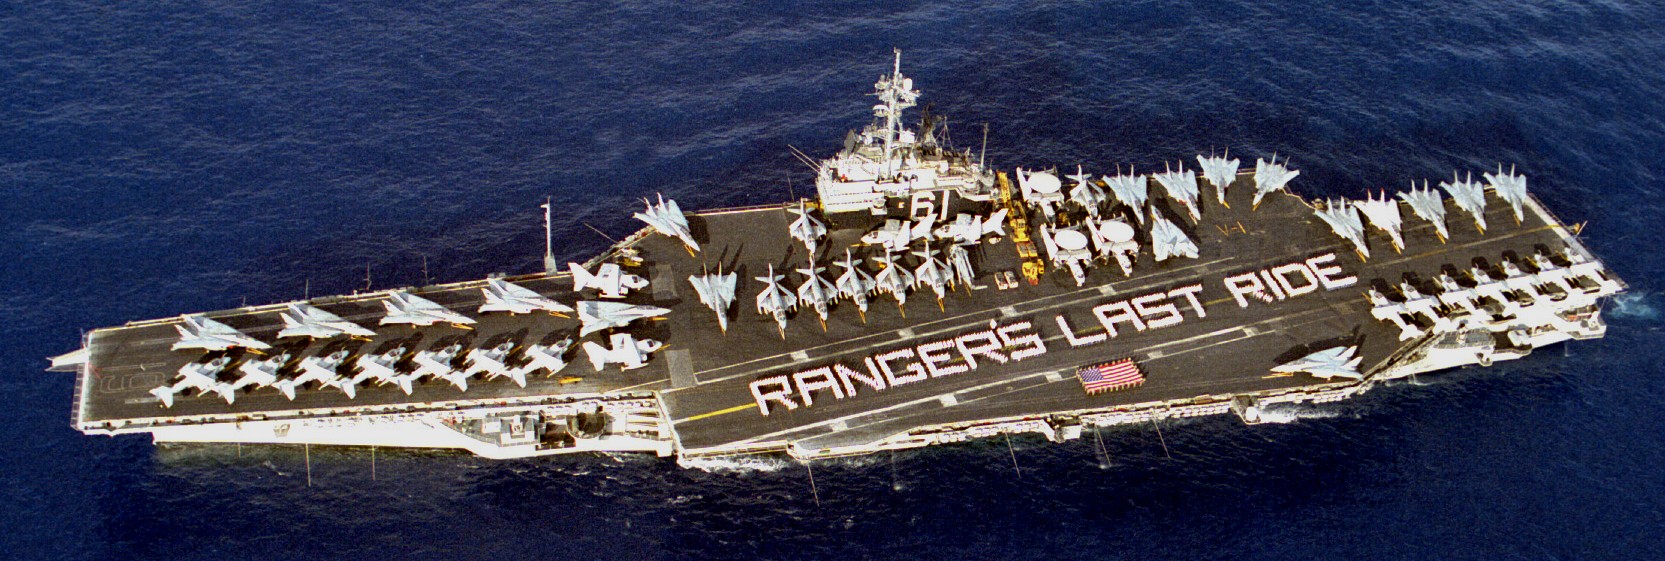 cv-61 uss ranger forrestal class aircraft carrier air wing cvw-2 us navy 137